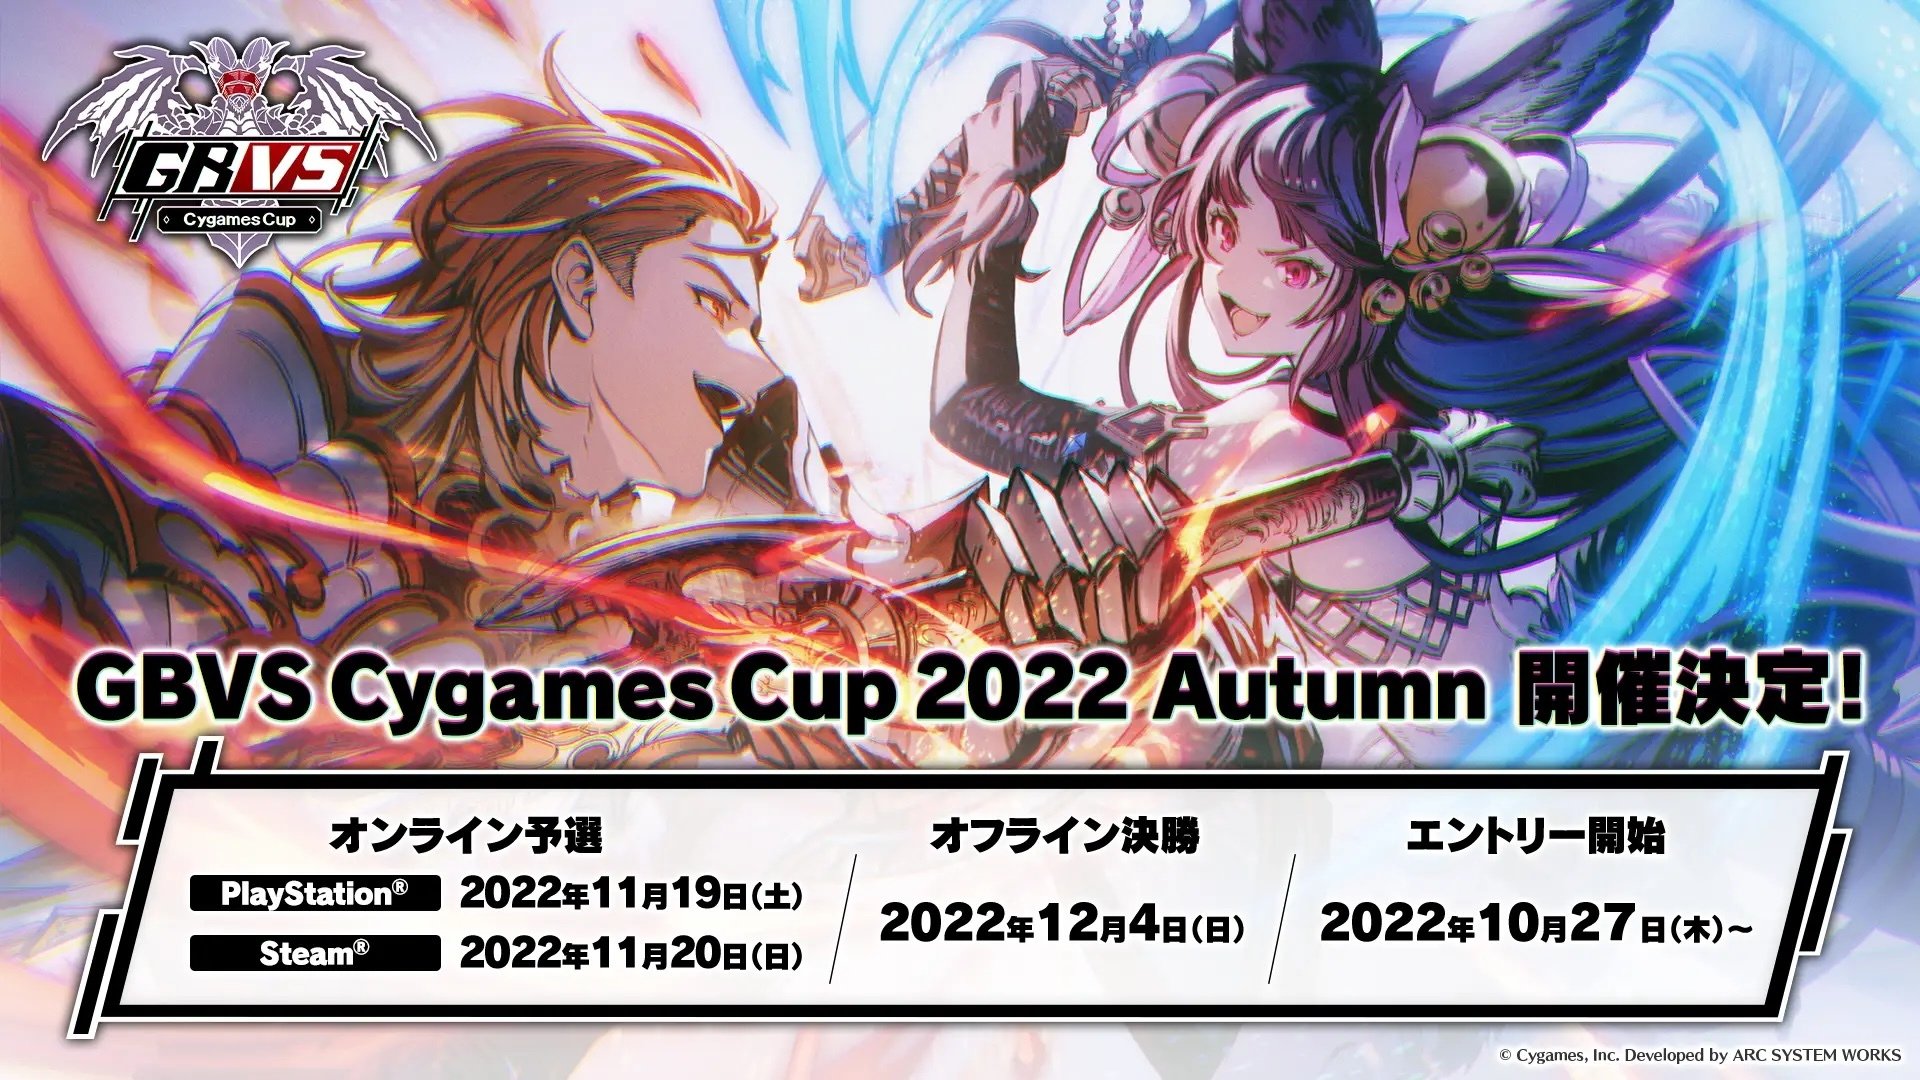  公式大会"GBVS Cygames Cup 2022 Autumn"